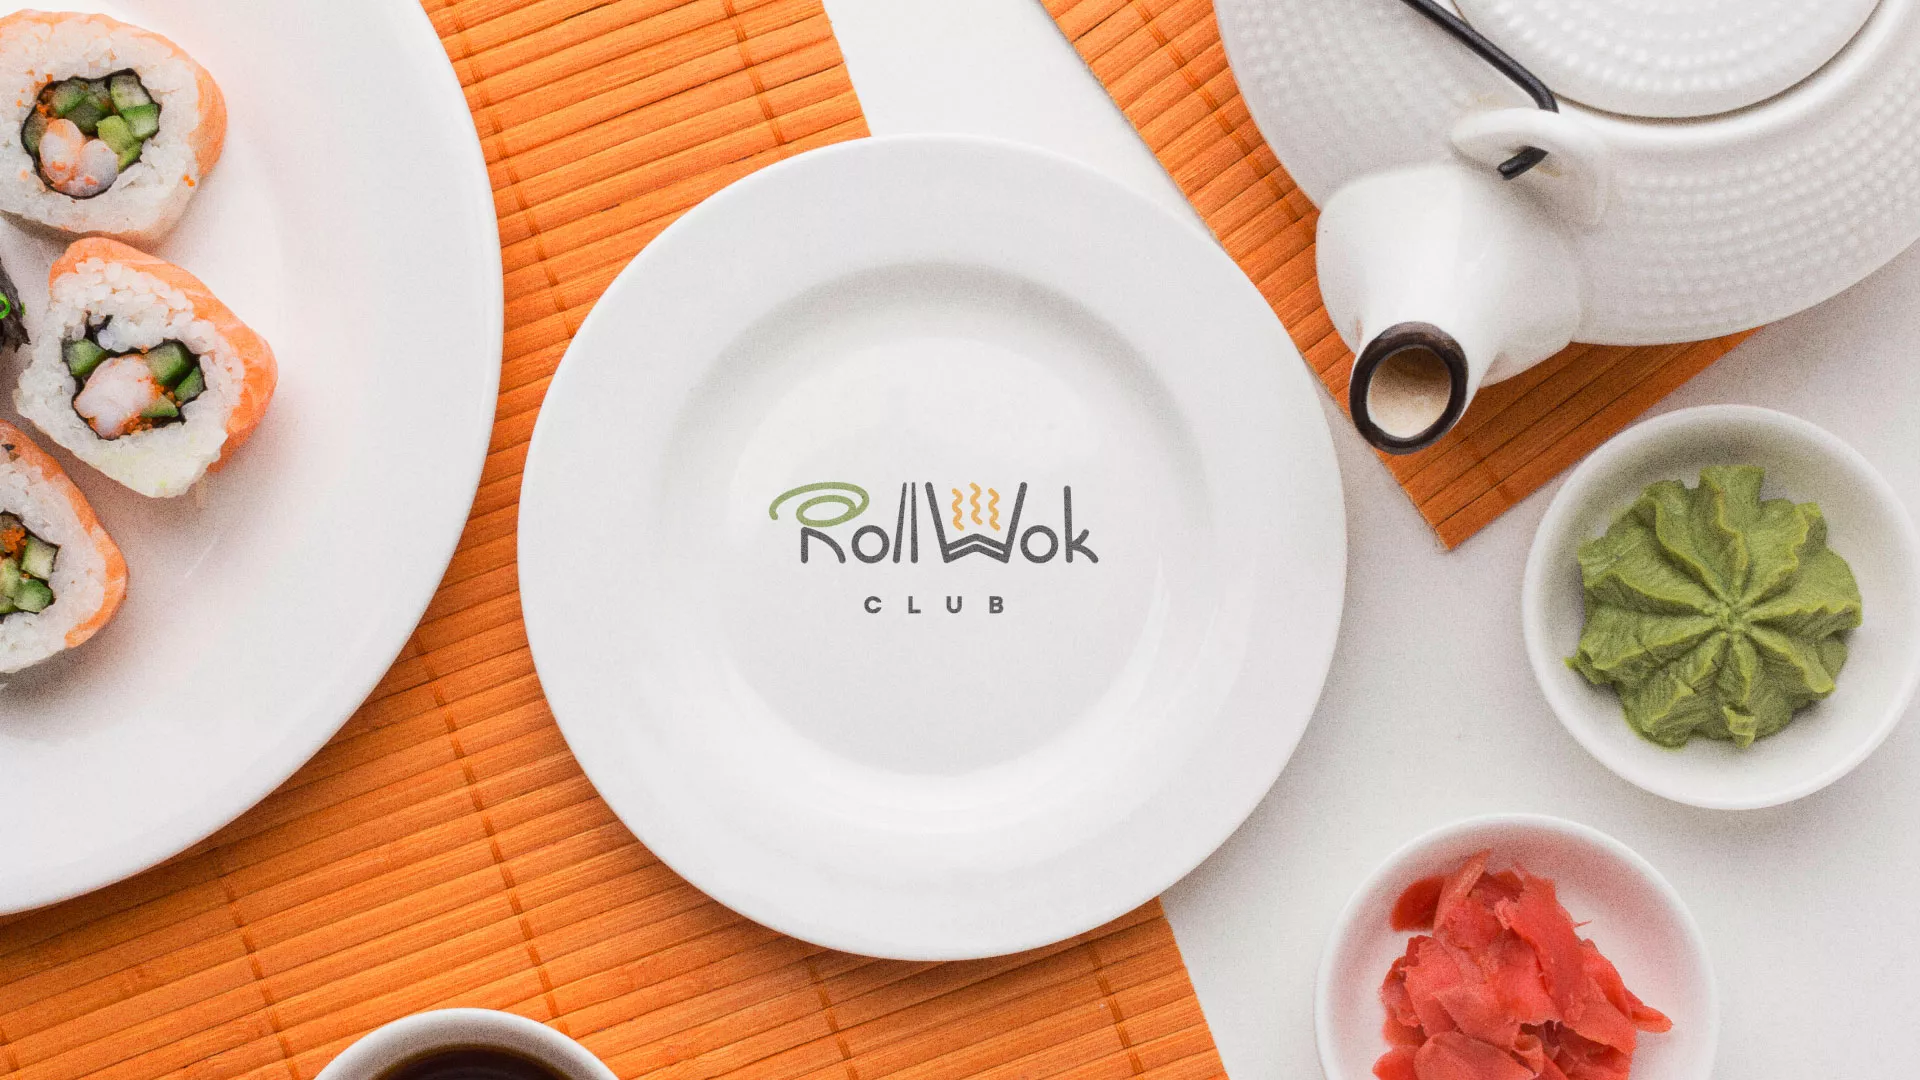 Разработка логотипа и фирменного стиля суши-бара «Roll Wok Club» в Иланском